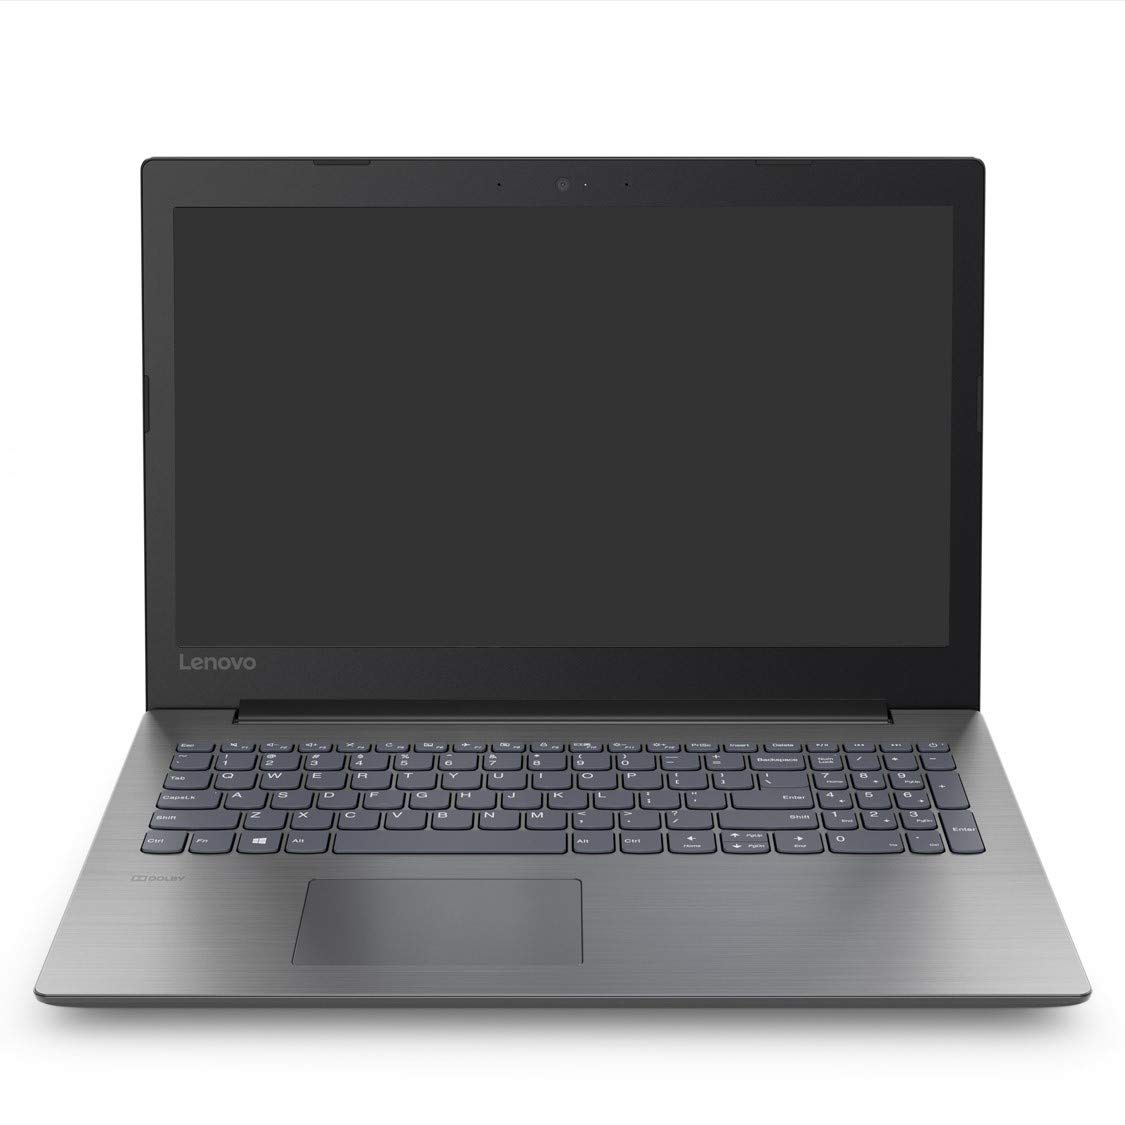 Lenovo Ideapad 330 Intel Core i3 6th Gen 15.6-inch HD Laptop (4GB RAM/1 TB HDD/DOS/Onyx Black/2.2 kg), 81DC00TFIN